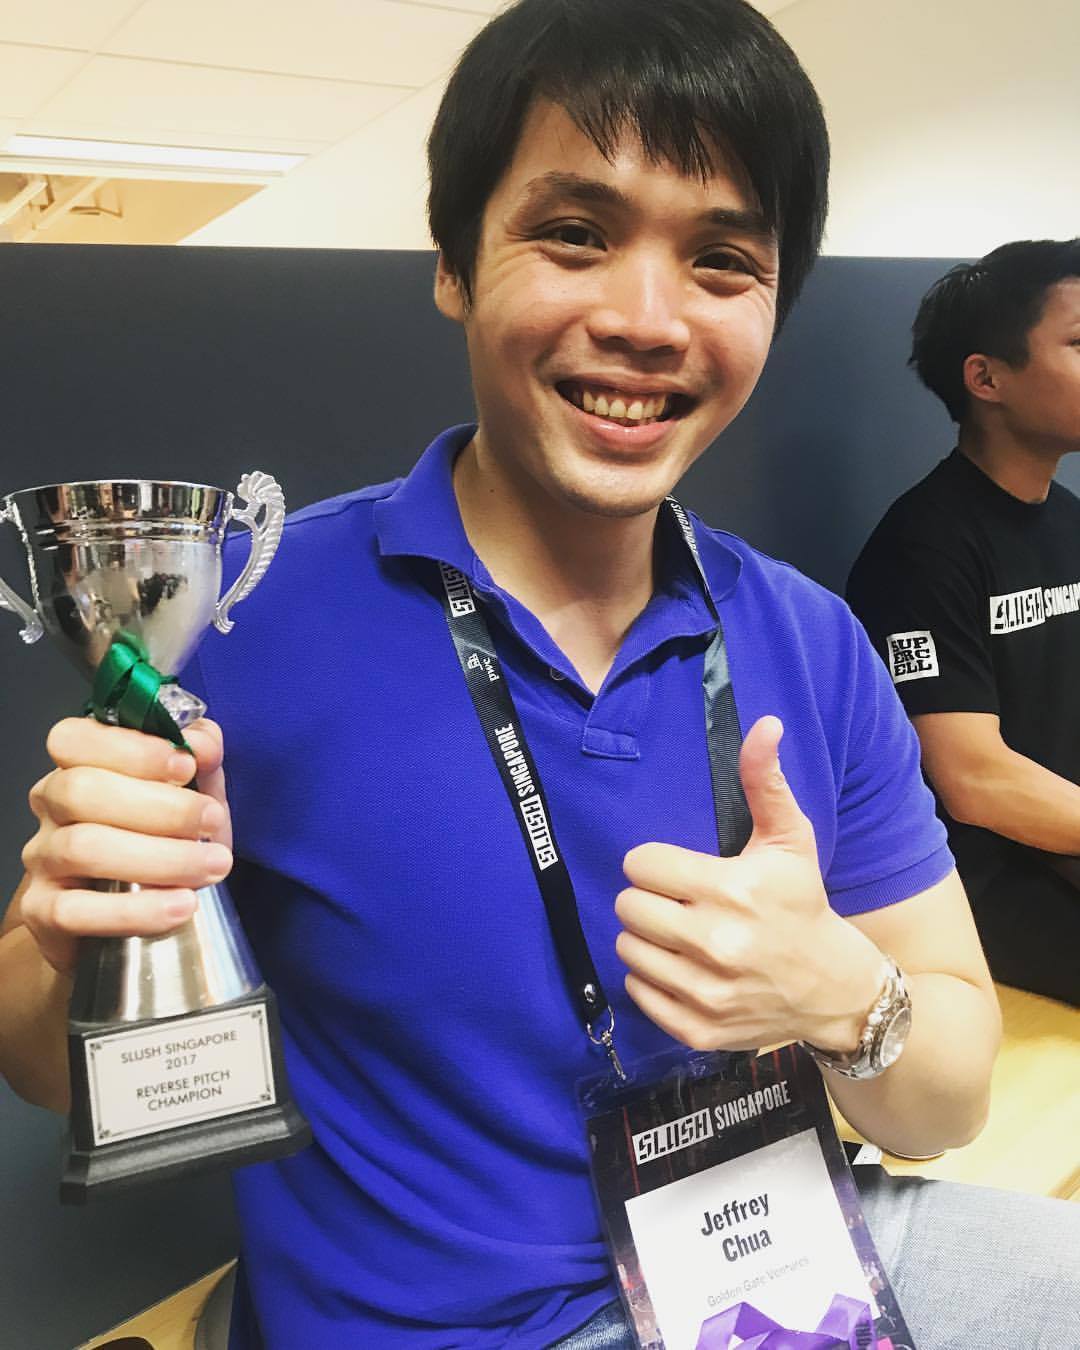 Jeffrey Chua winning Slush’s “Reverse Pitch” competition